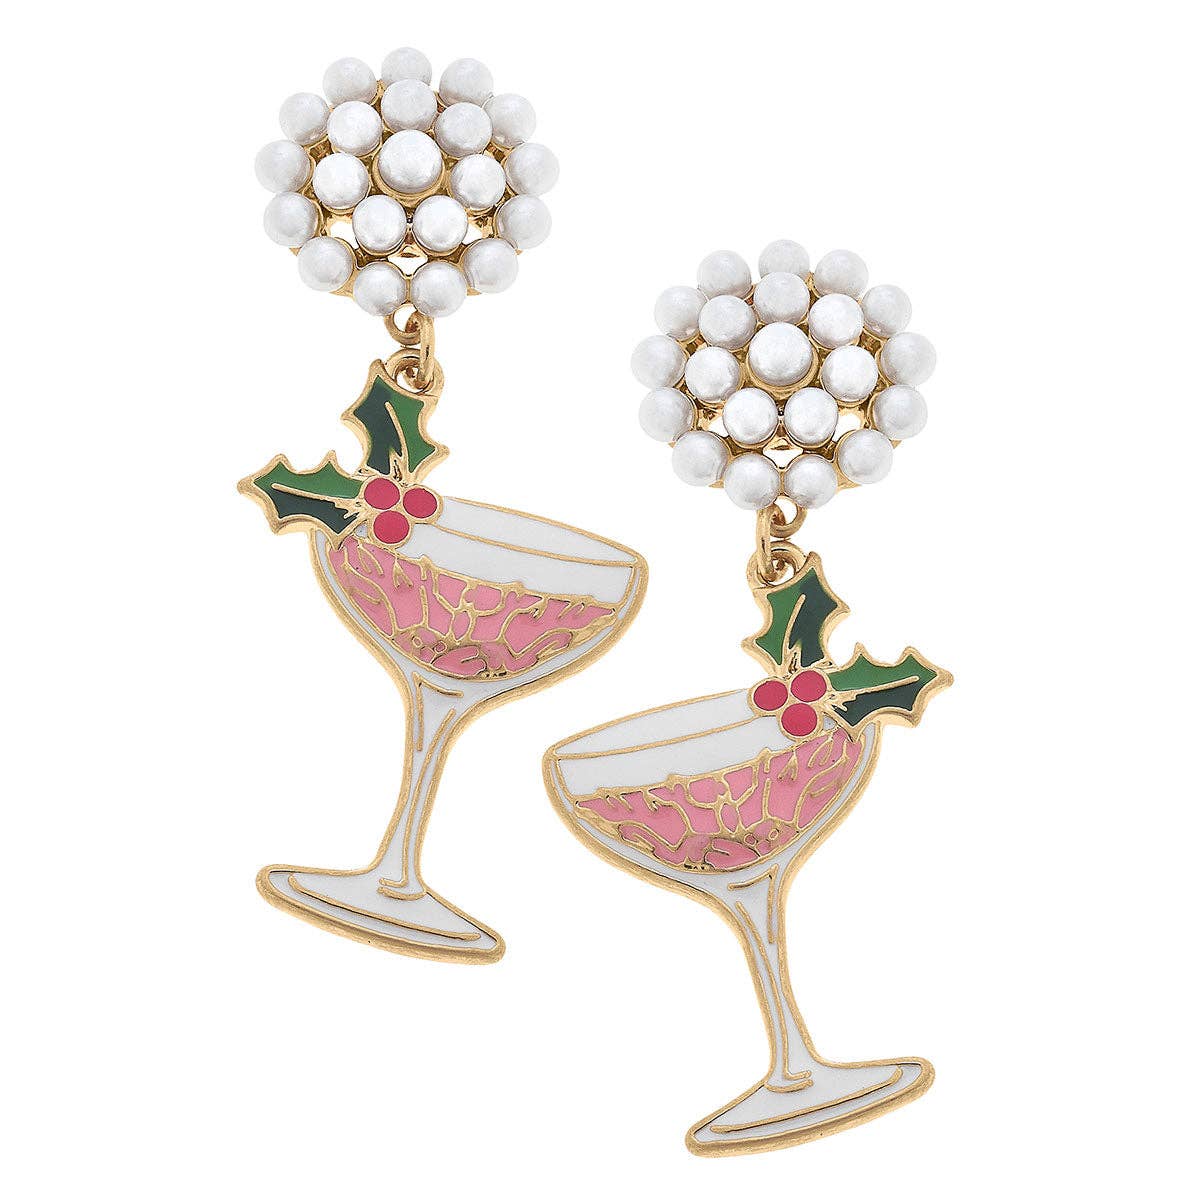 Festive Champagne Coupe Enamel Earrings in Pink & Green - Pretty Crafty Lady Shop